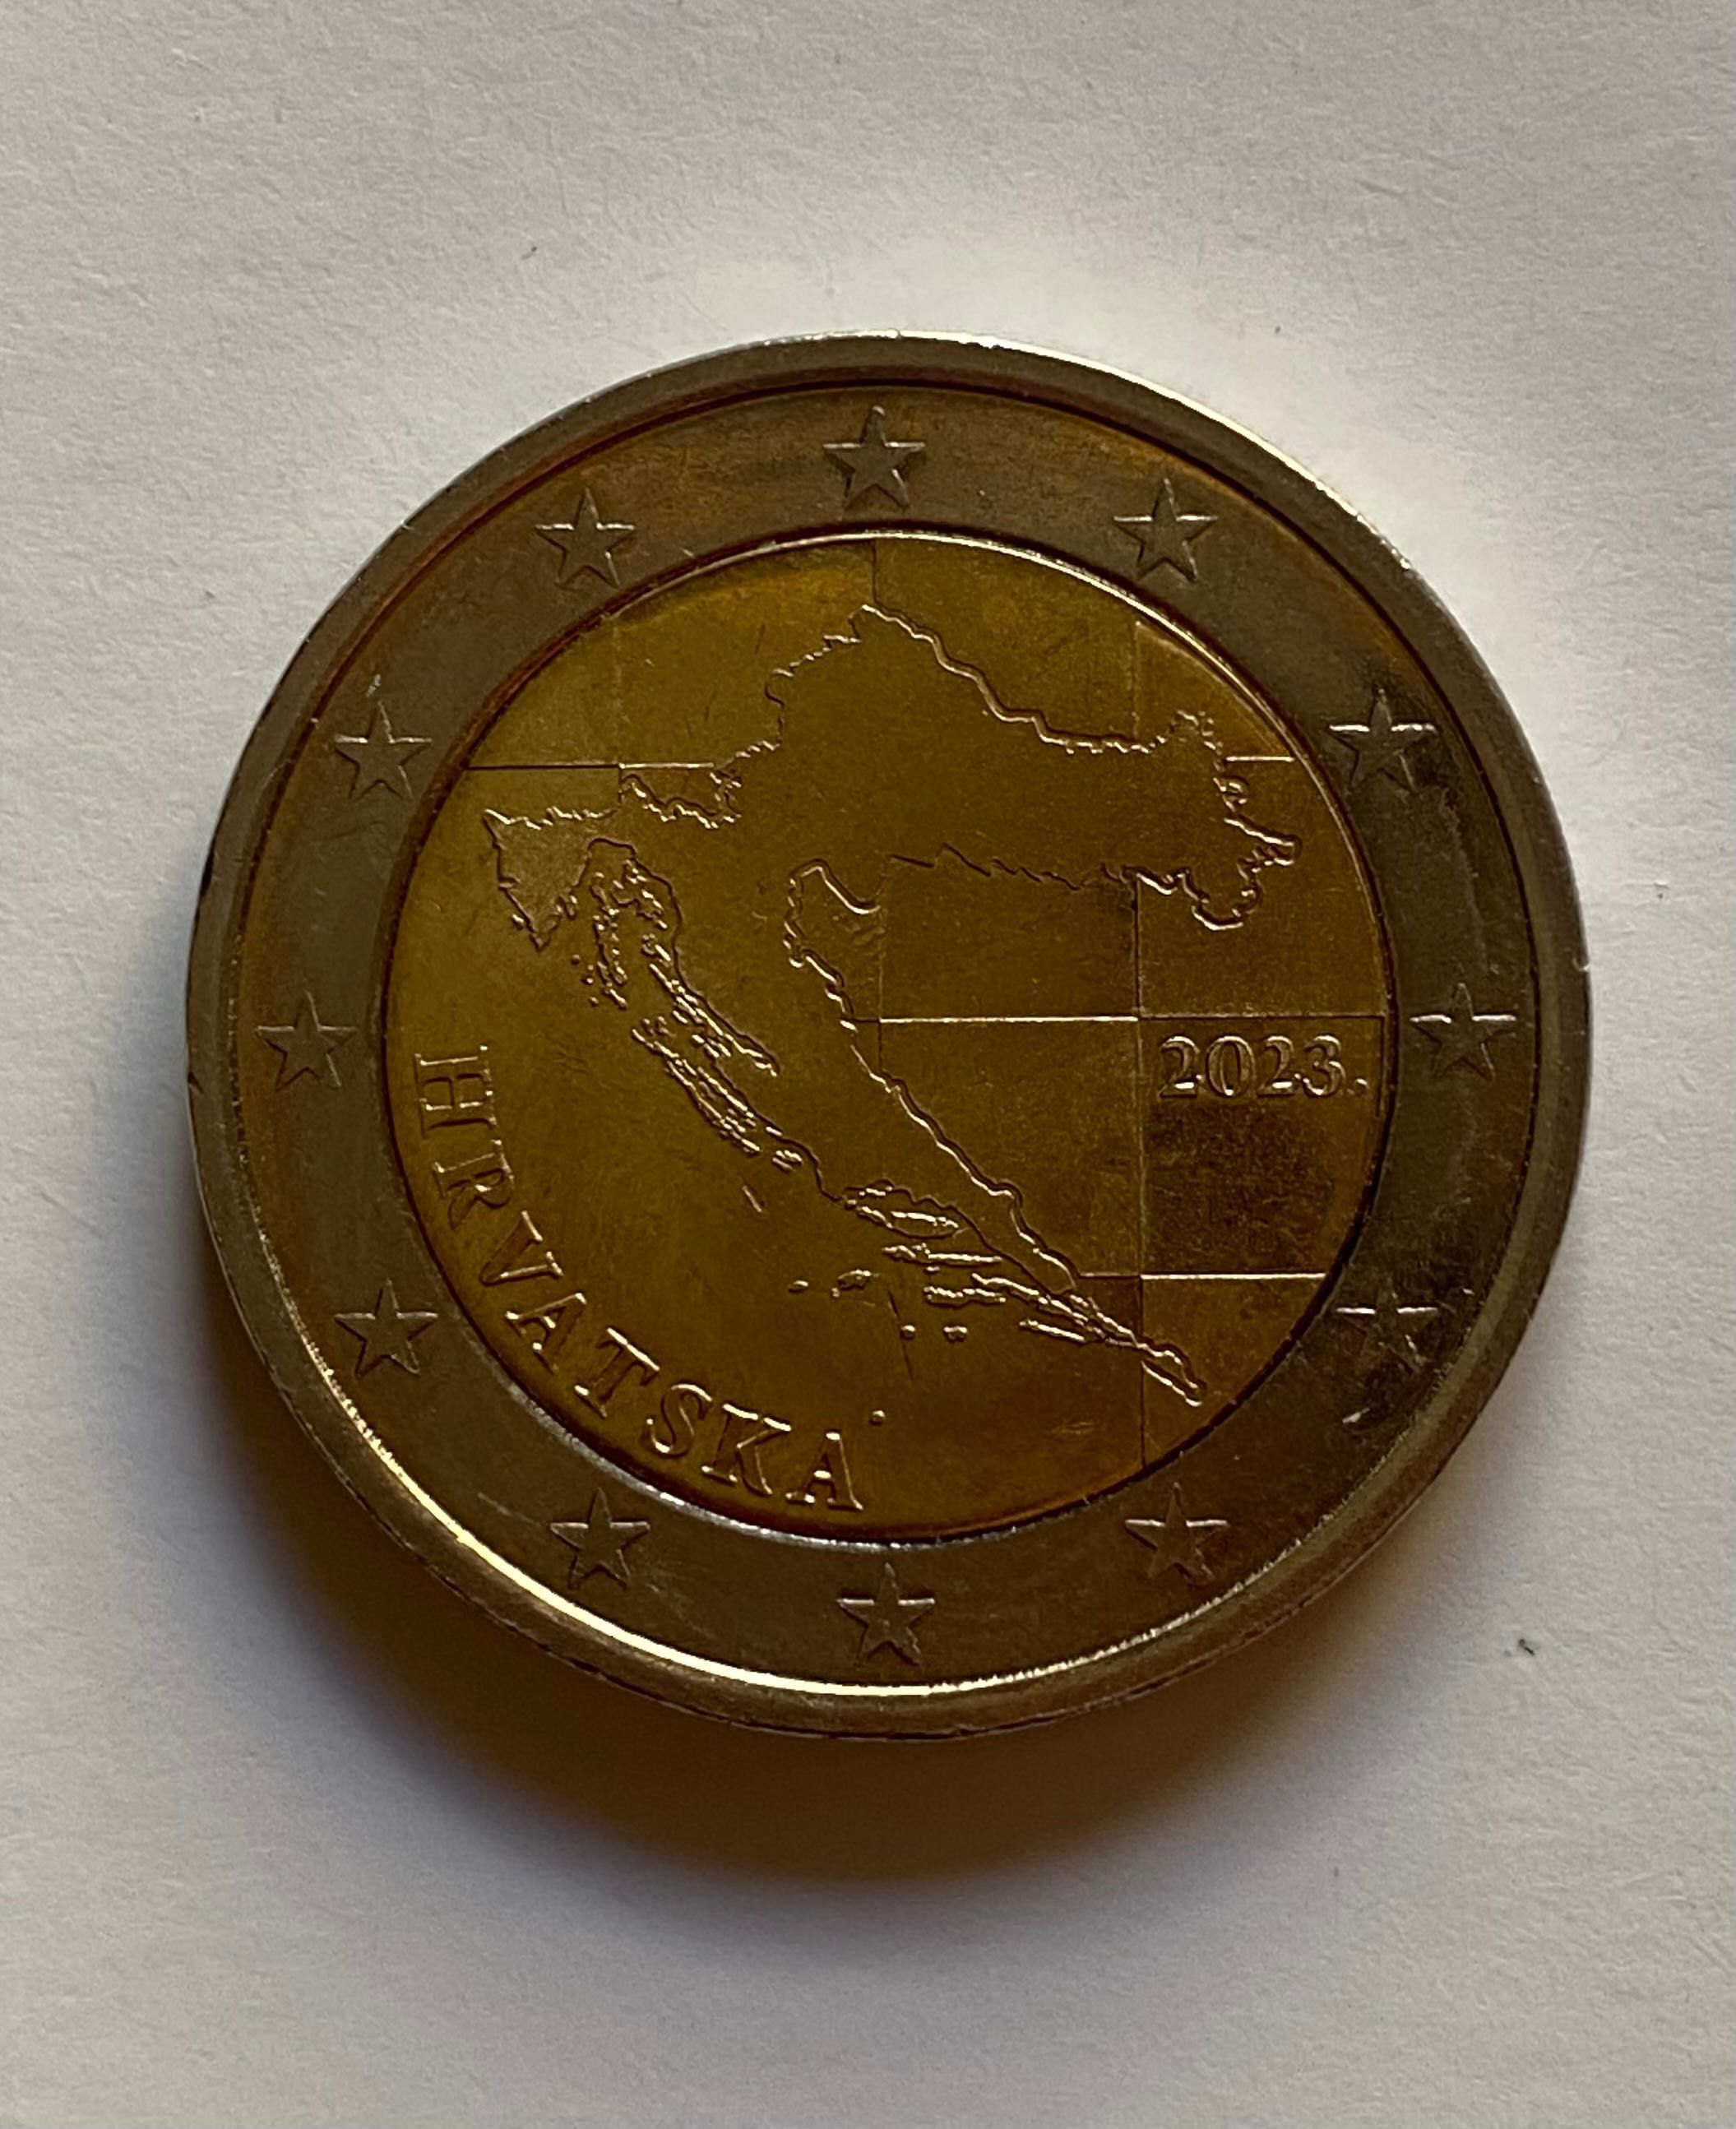 Coleção Moedas - Croácia - 2€ , 1€ , 50, 20 e 10 cêntimos - Euro